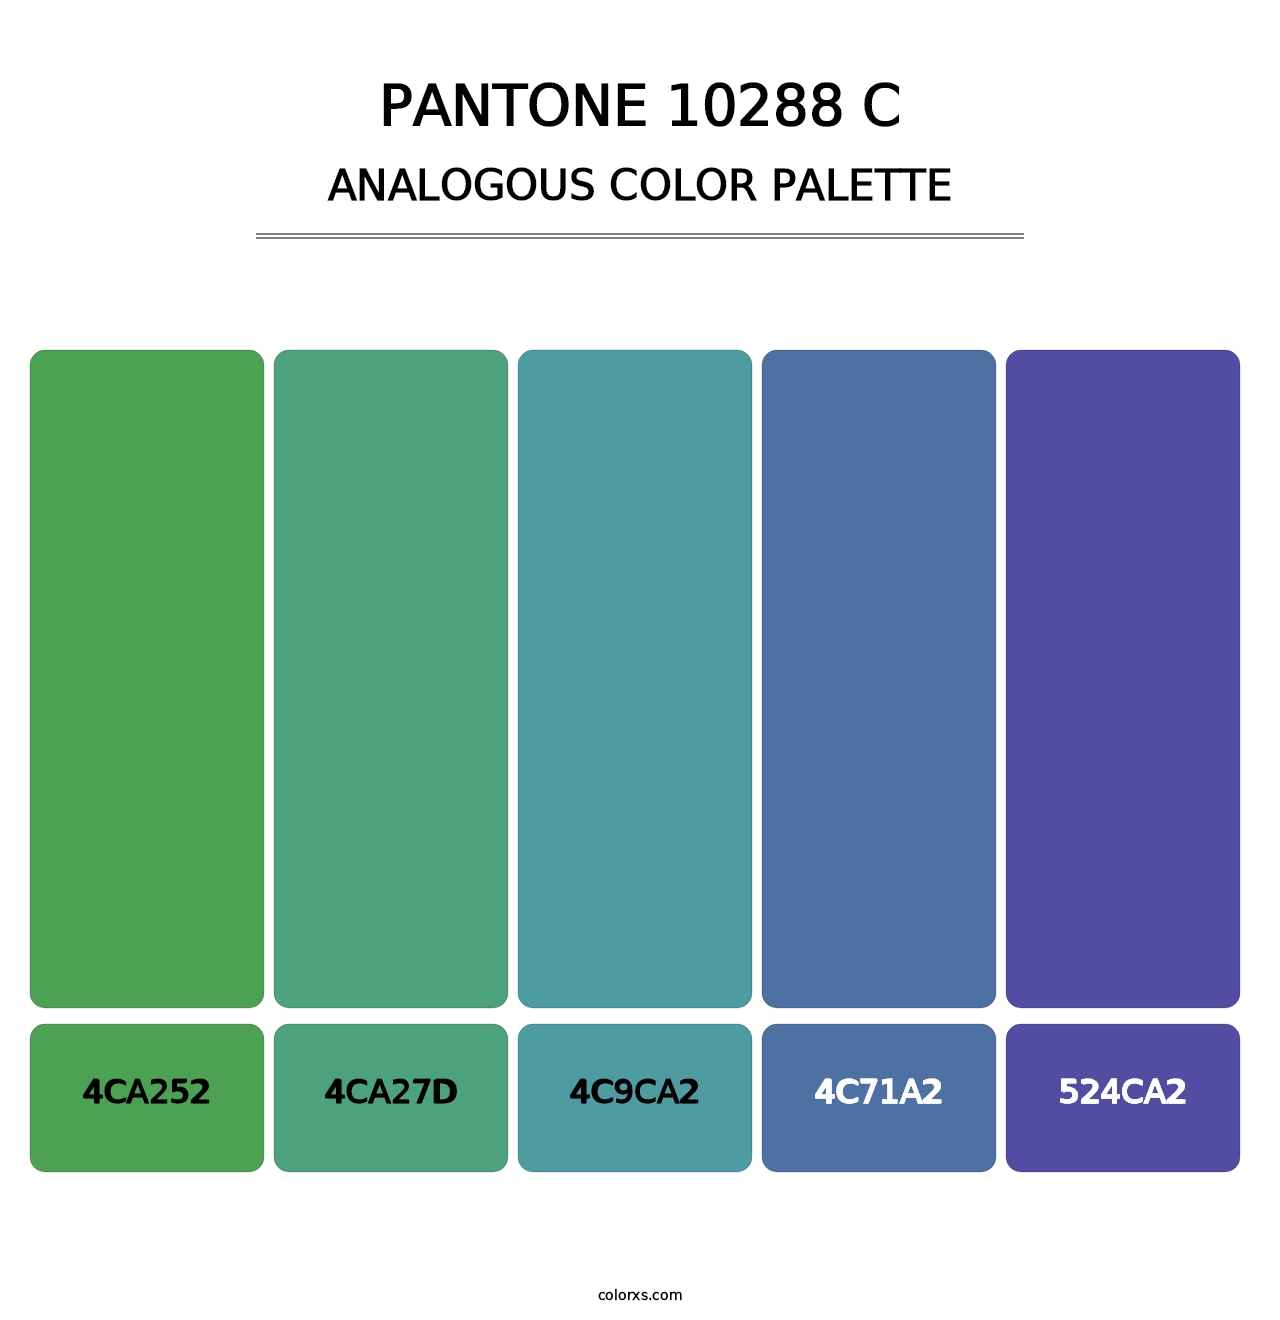 PANTONE 10288 C - Analogous Color Palette